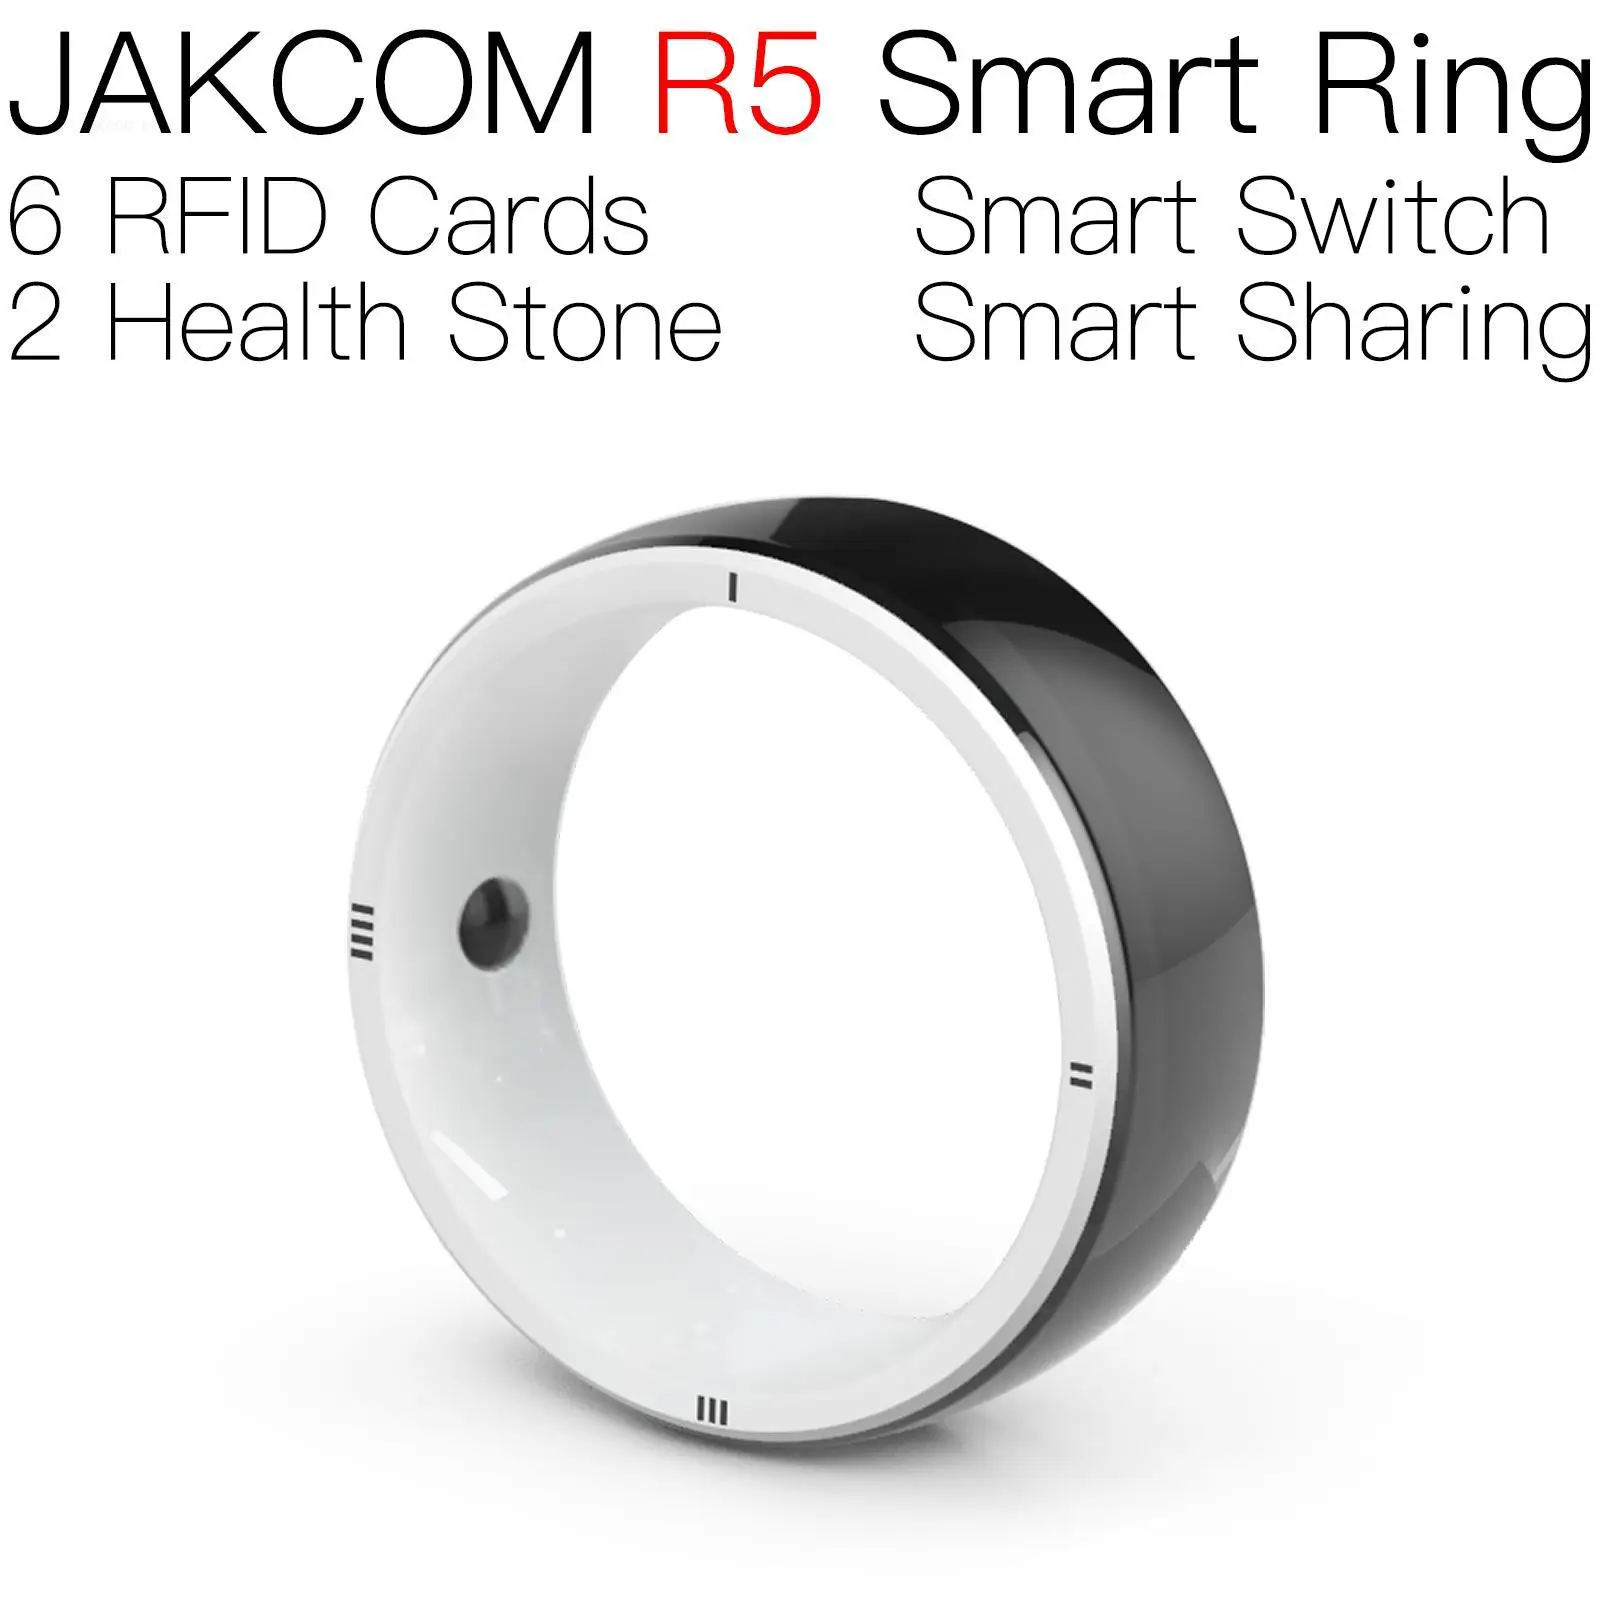 

JAKCOM R5 Smart Ring New arrival as tag tessera anti rfid fob key blank smartcard dual sticker store black nfc pvc card alien